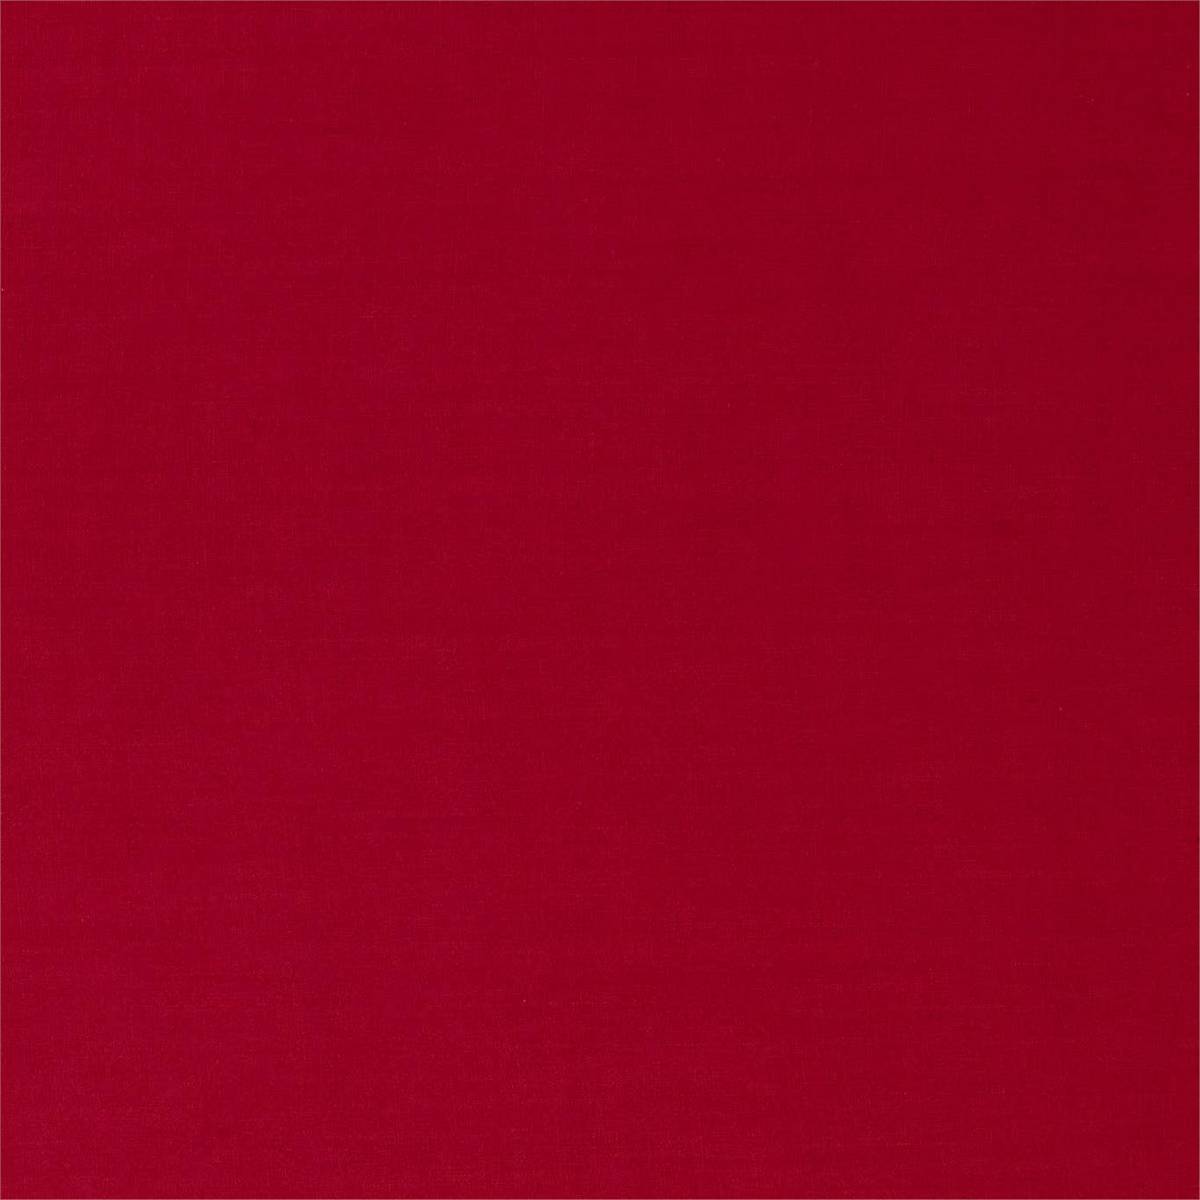 Zoffany Linens Crimson Fabric by Zoffany